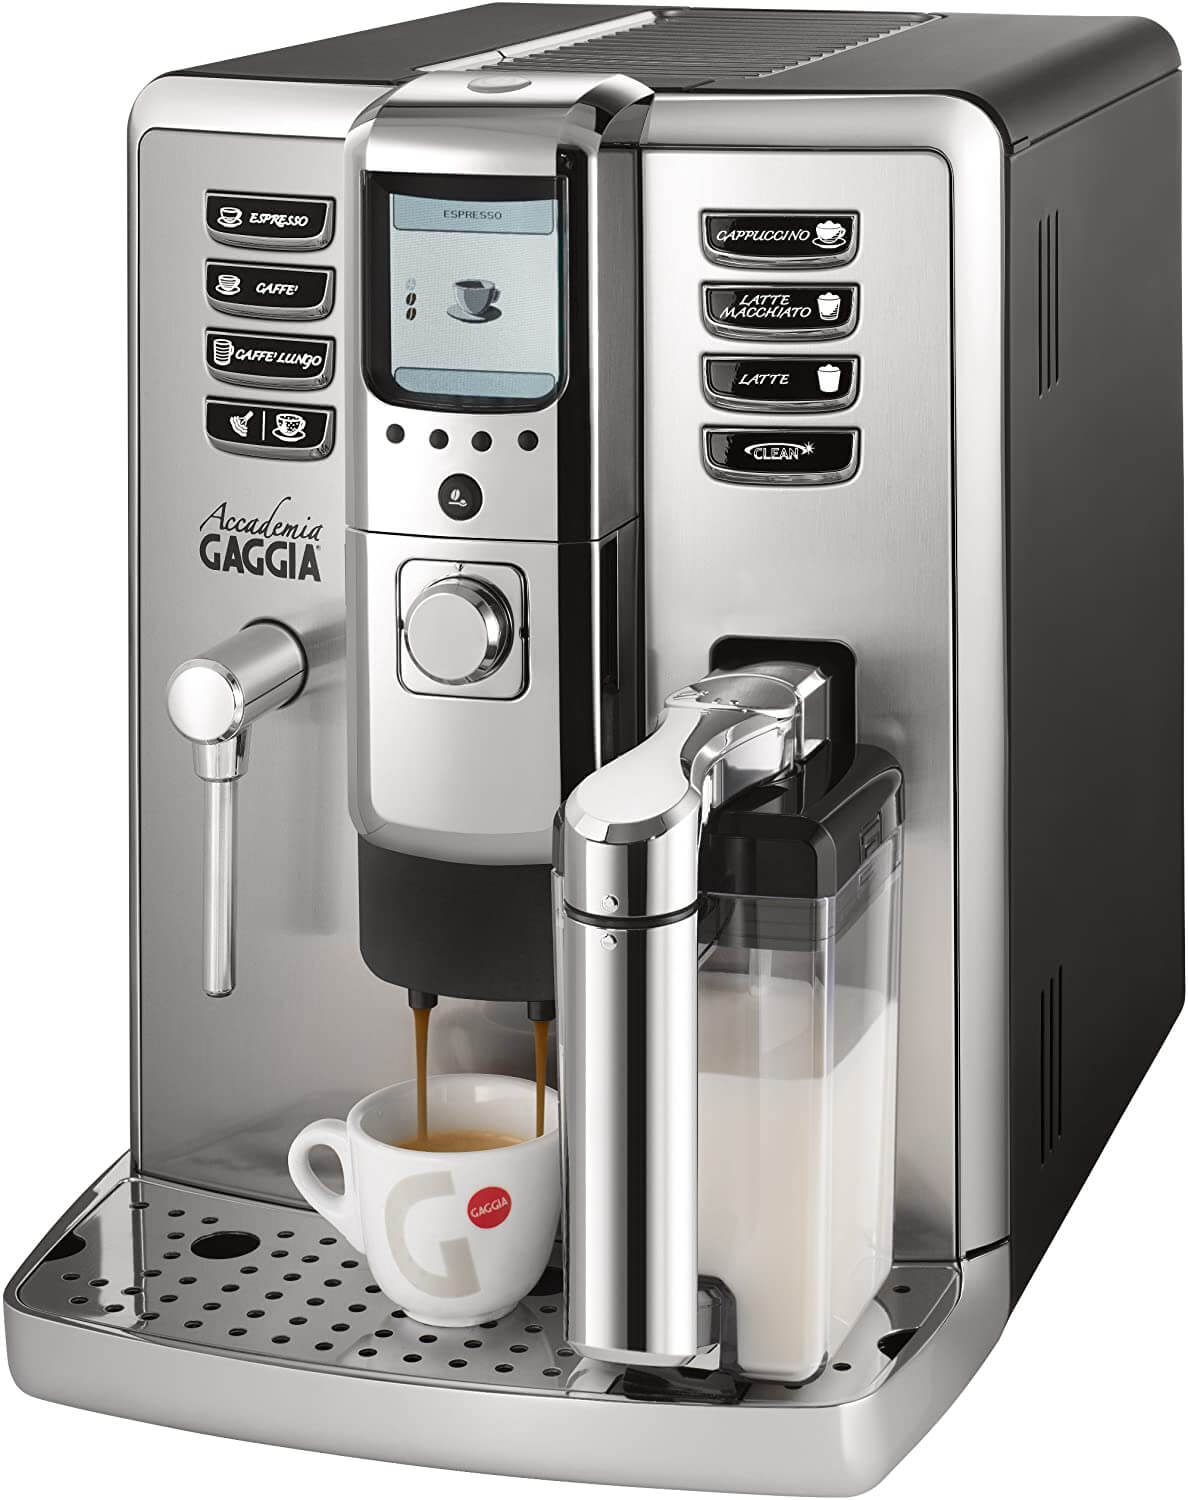 Gaggia-1003380-accademia-espresso-machine1